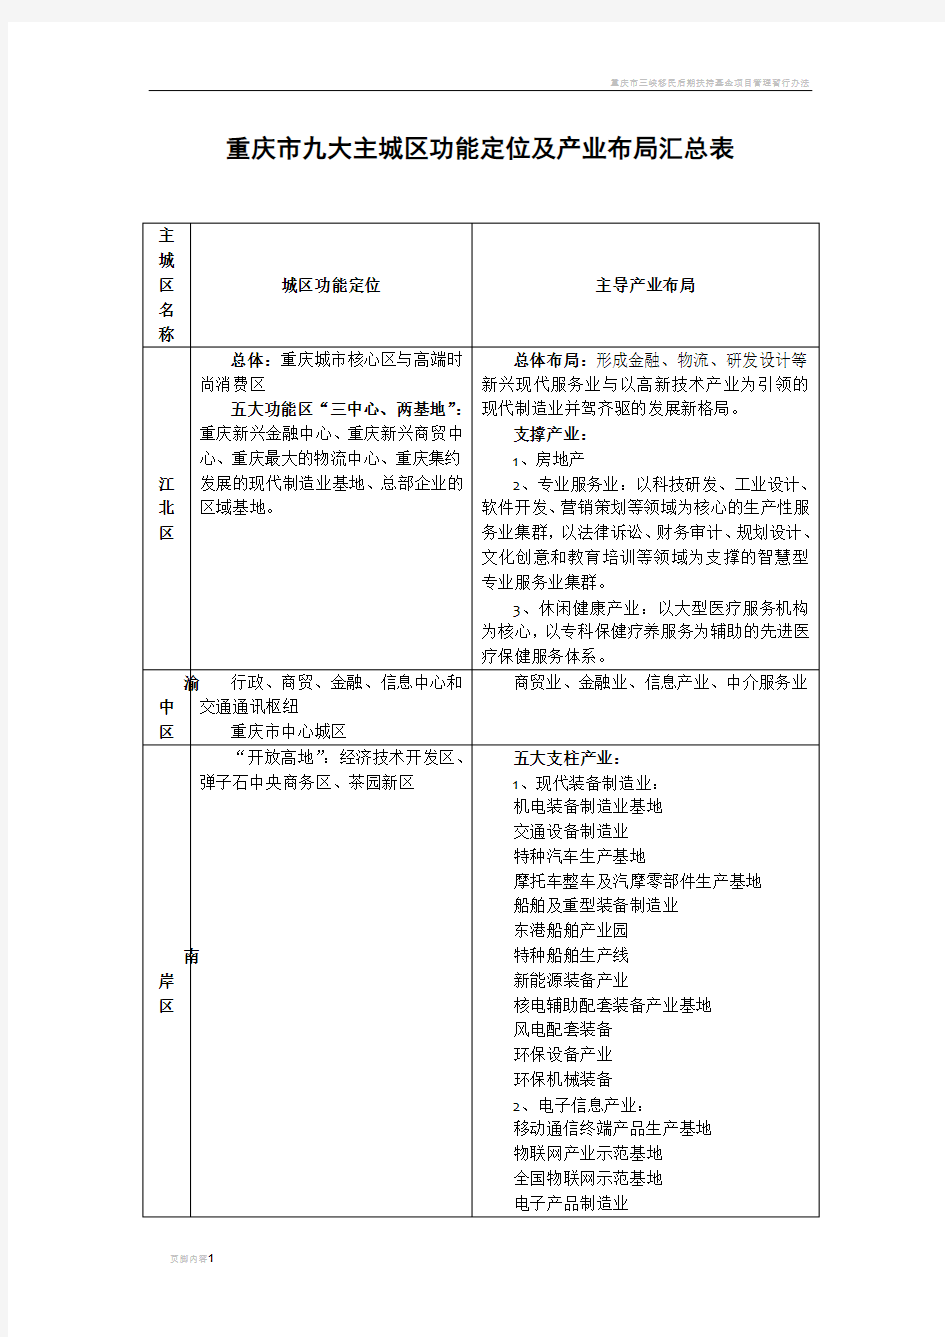 重庆市九大主城区功能定位及产业布局汇总表